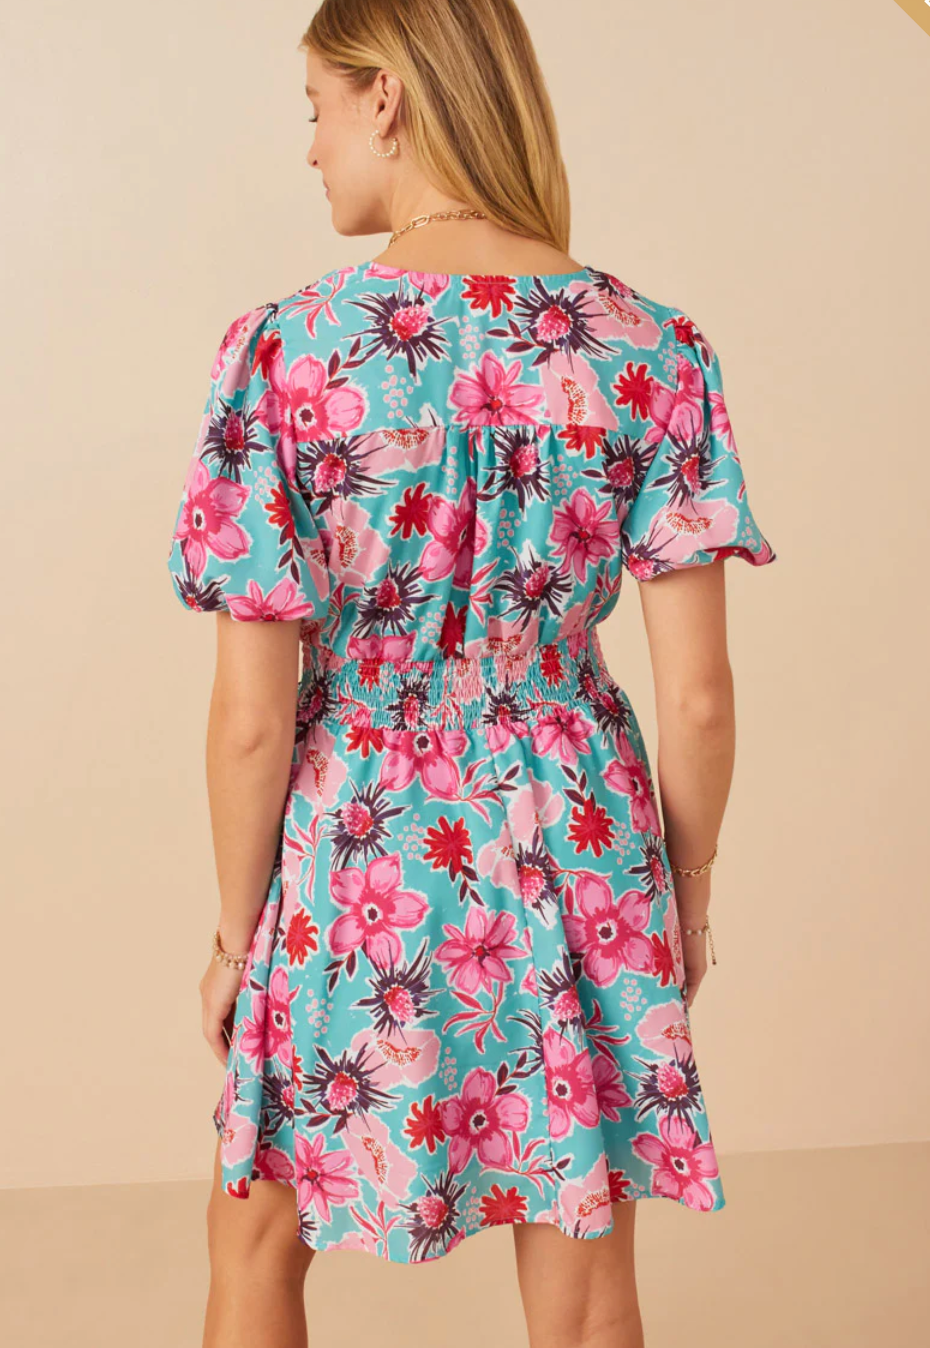 Floral Print Dress: Size Inclusive